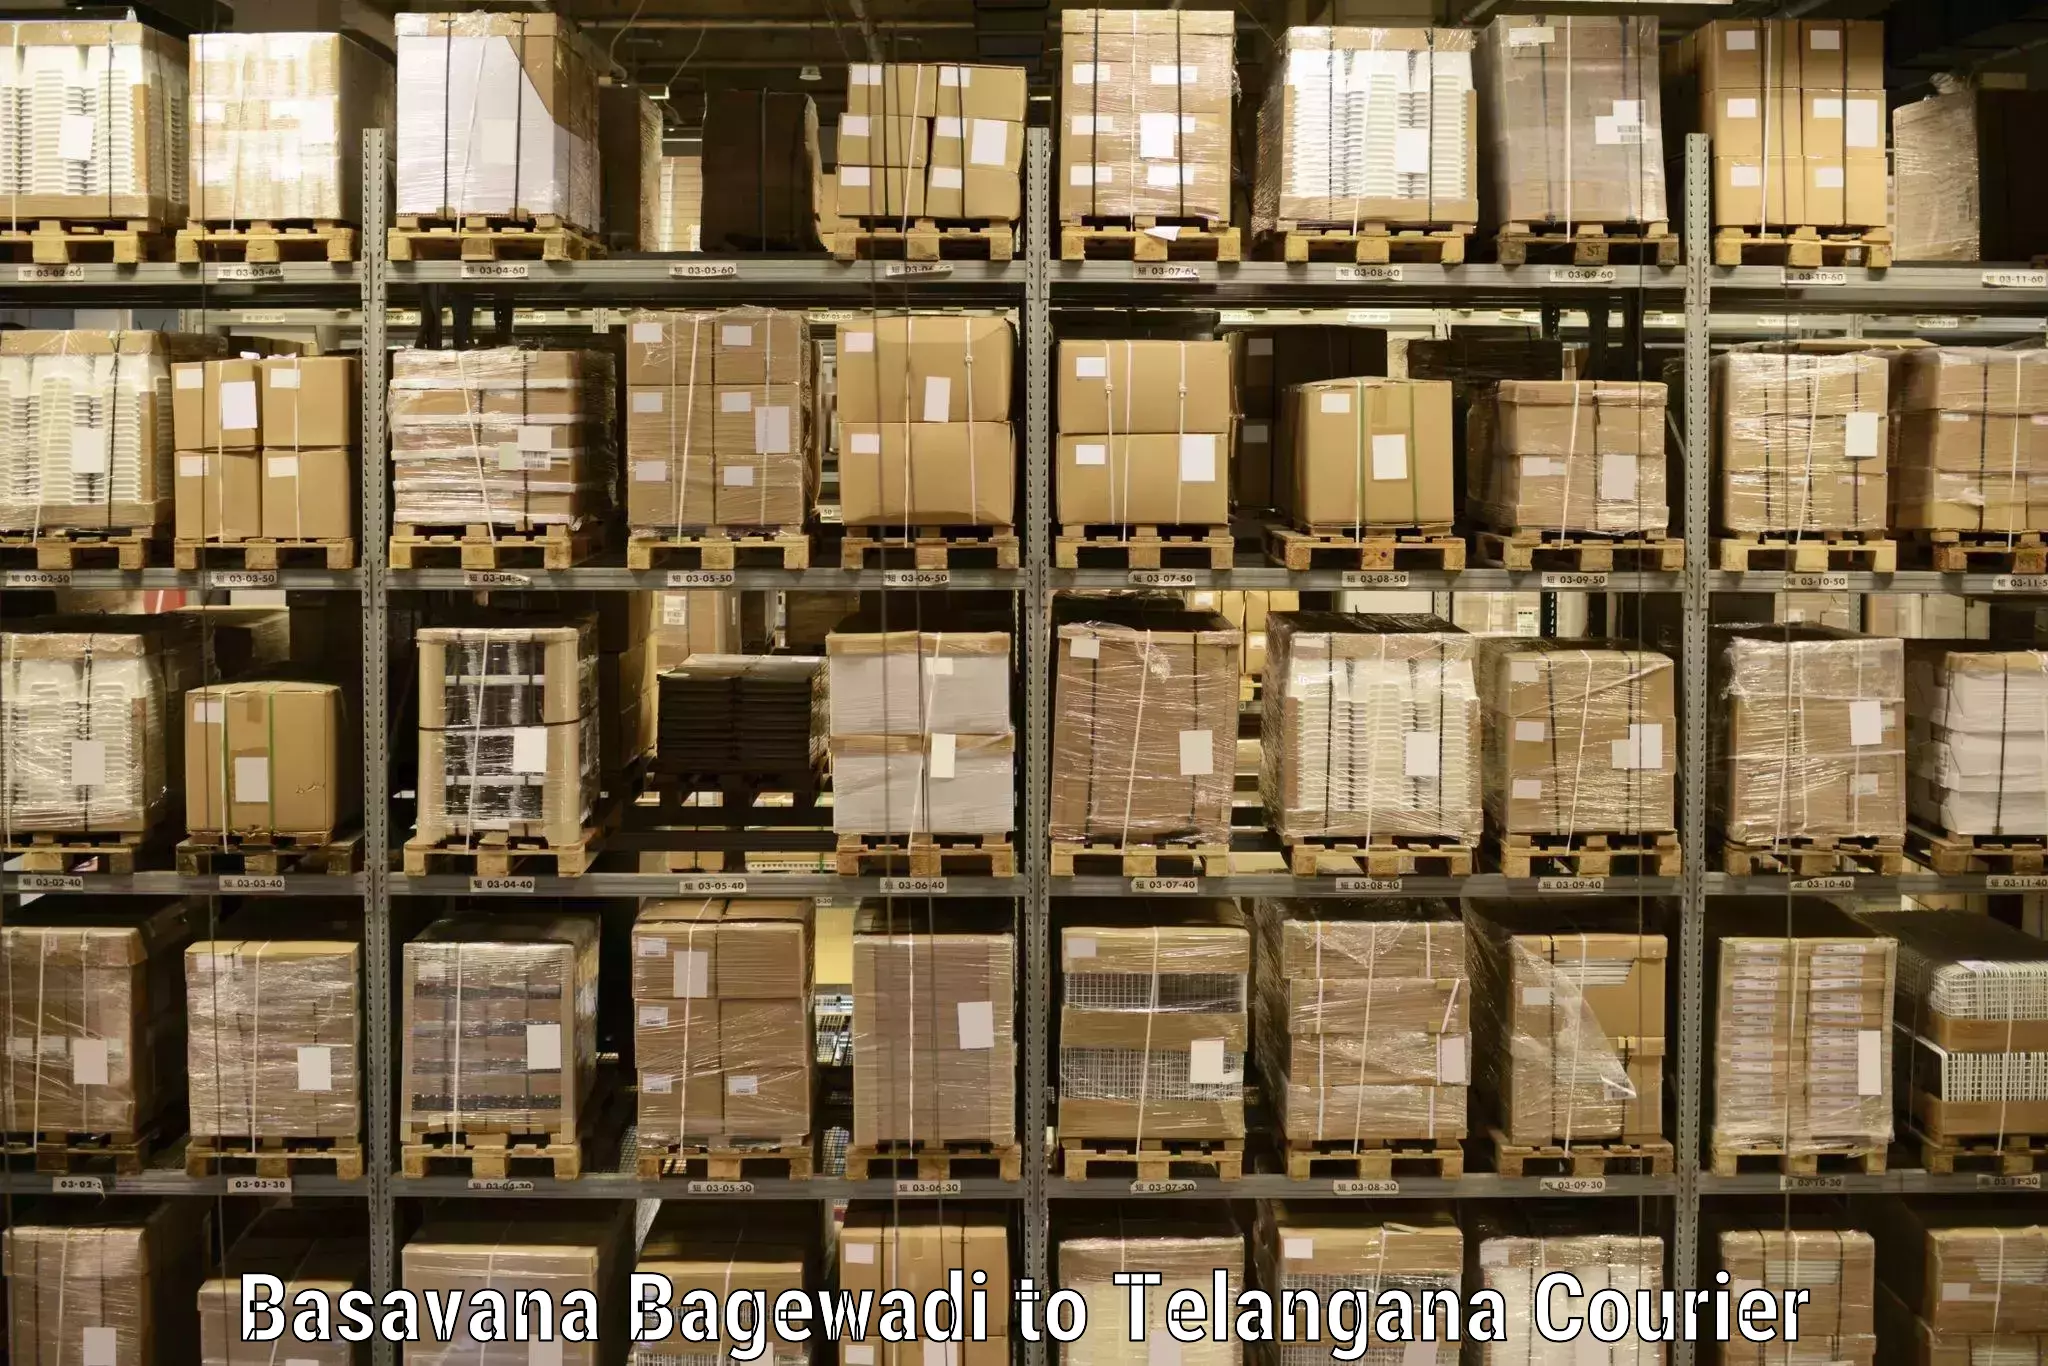 High-speed parcel service Basavana Bagewadi to Banswada